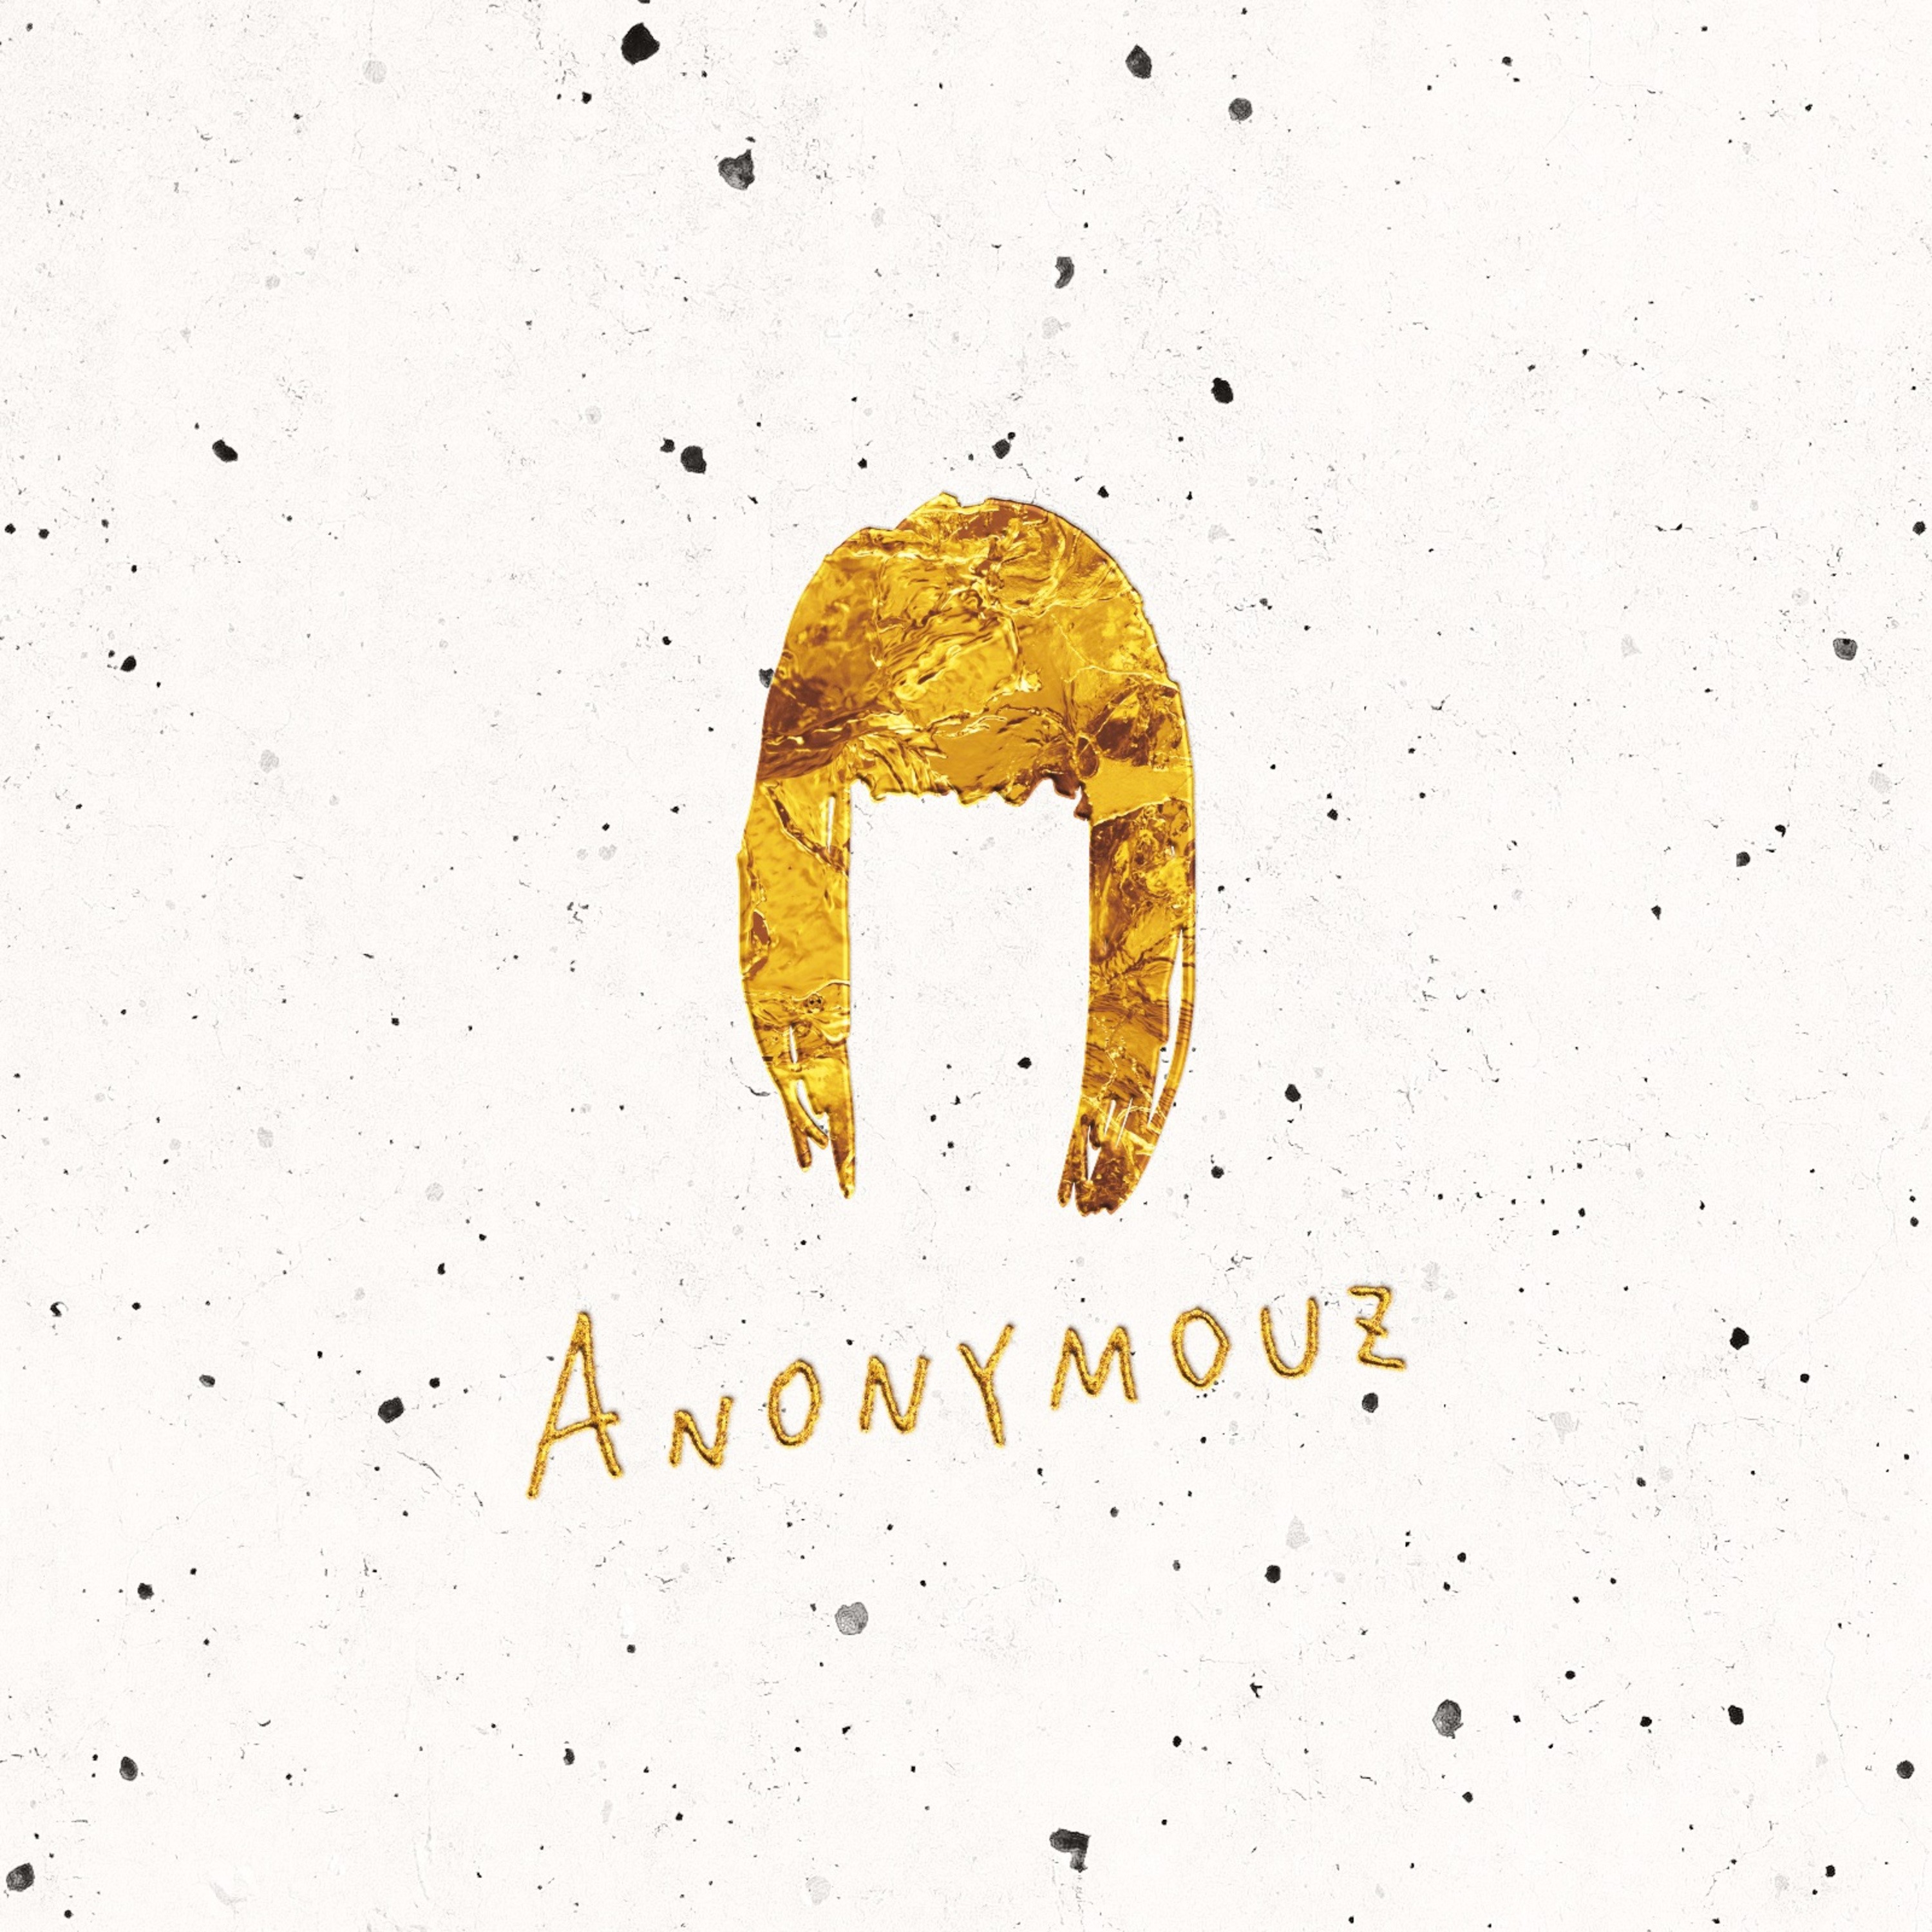 Anonymouz – Essence [FLAC 24bit/48kHz]